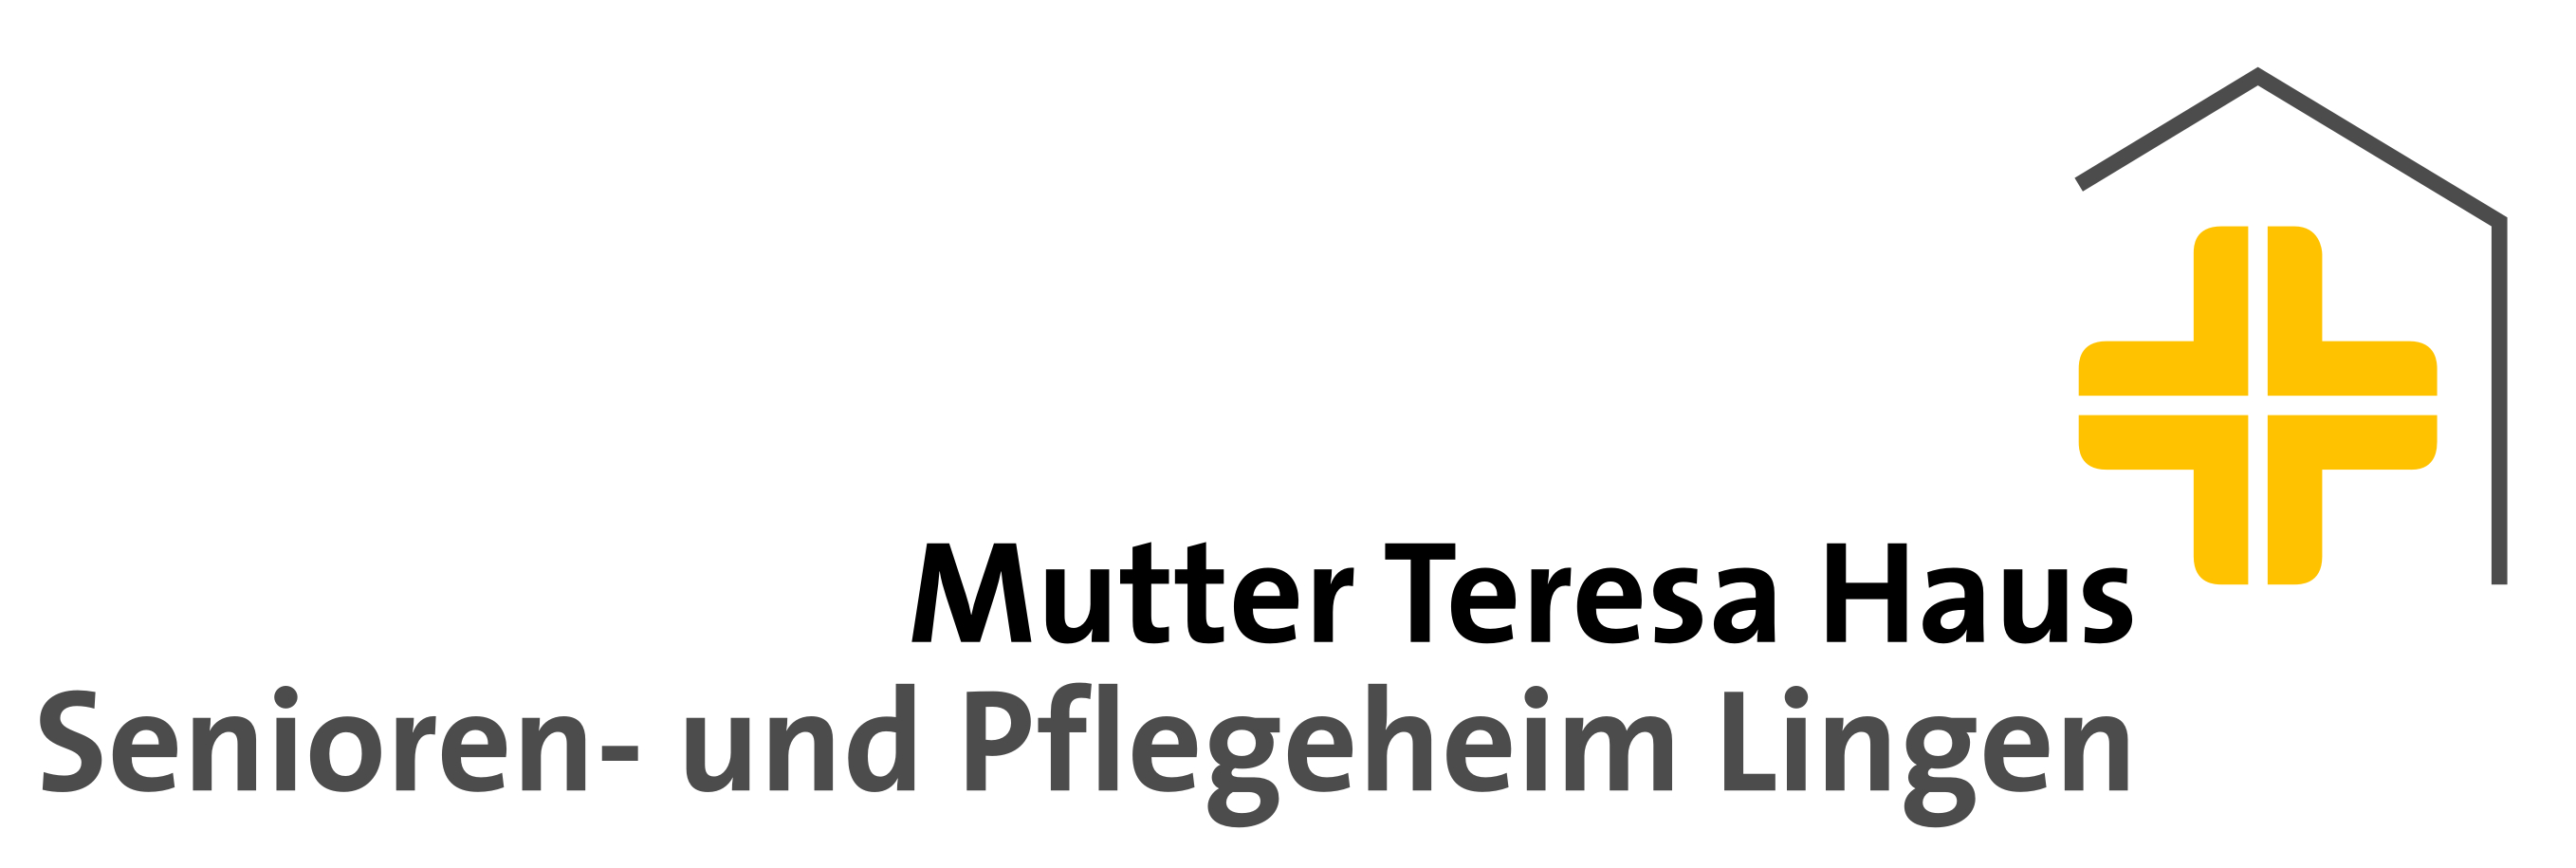 Mutter Teresa Haus Senioren- und Pflegeheim Lingen